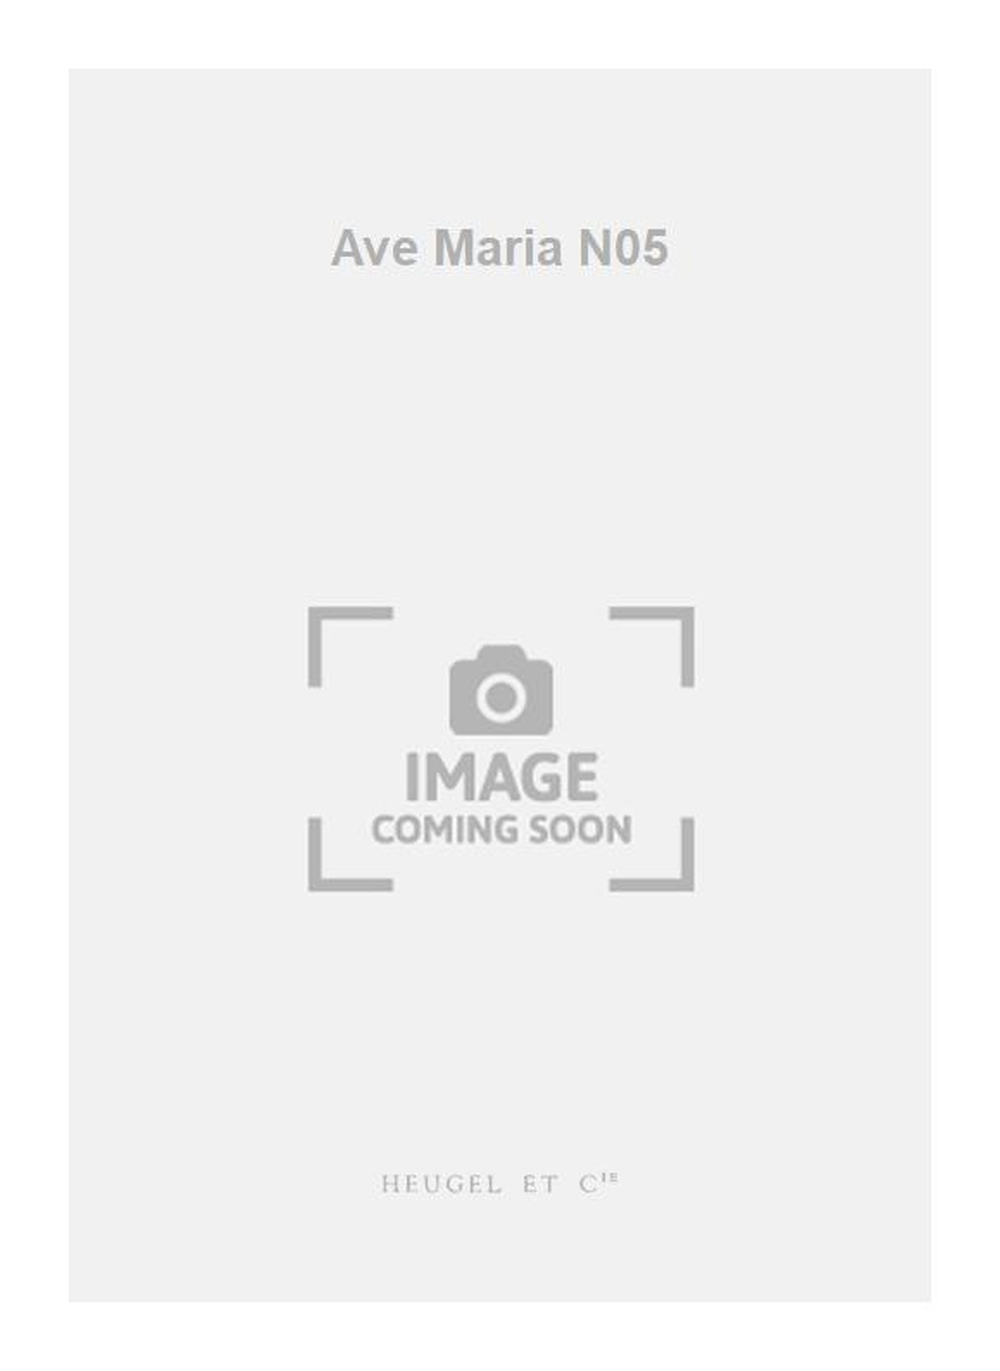 Charles Gounod: Ave Maria N05